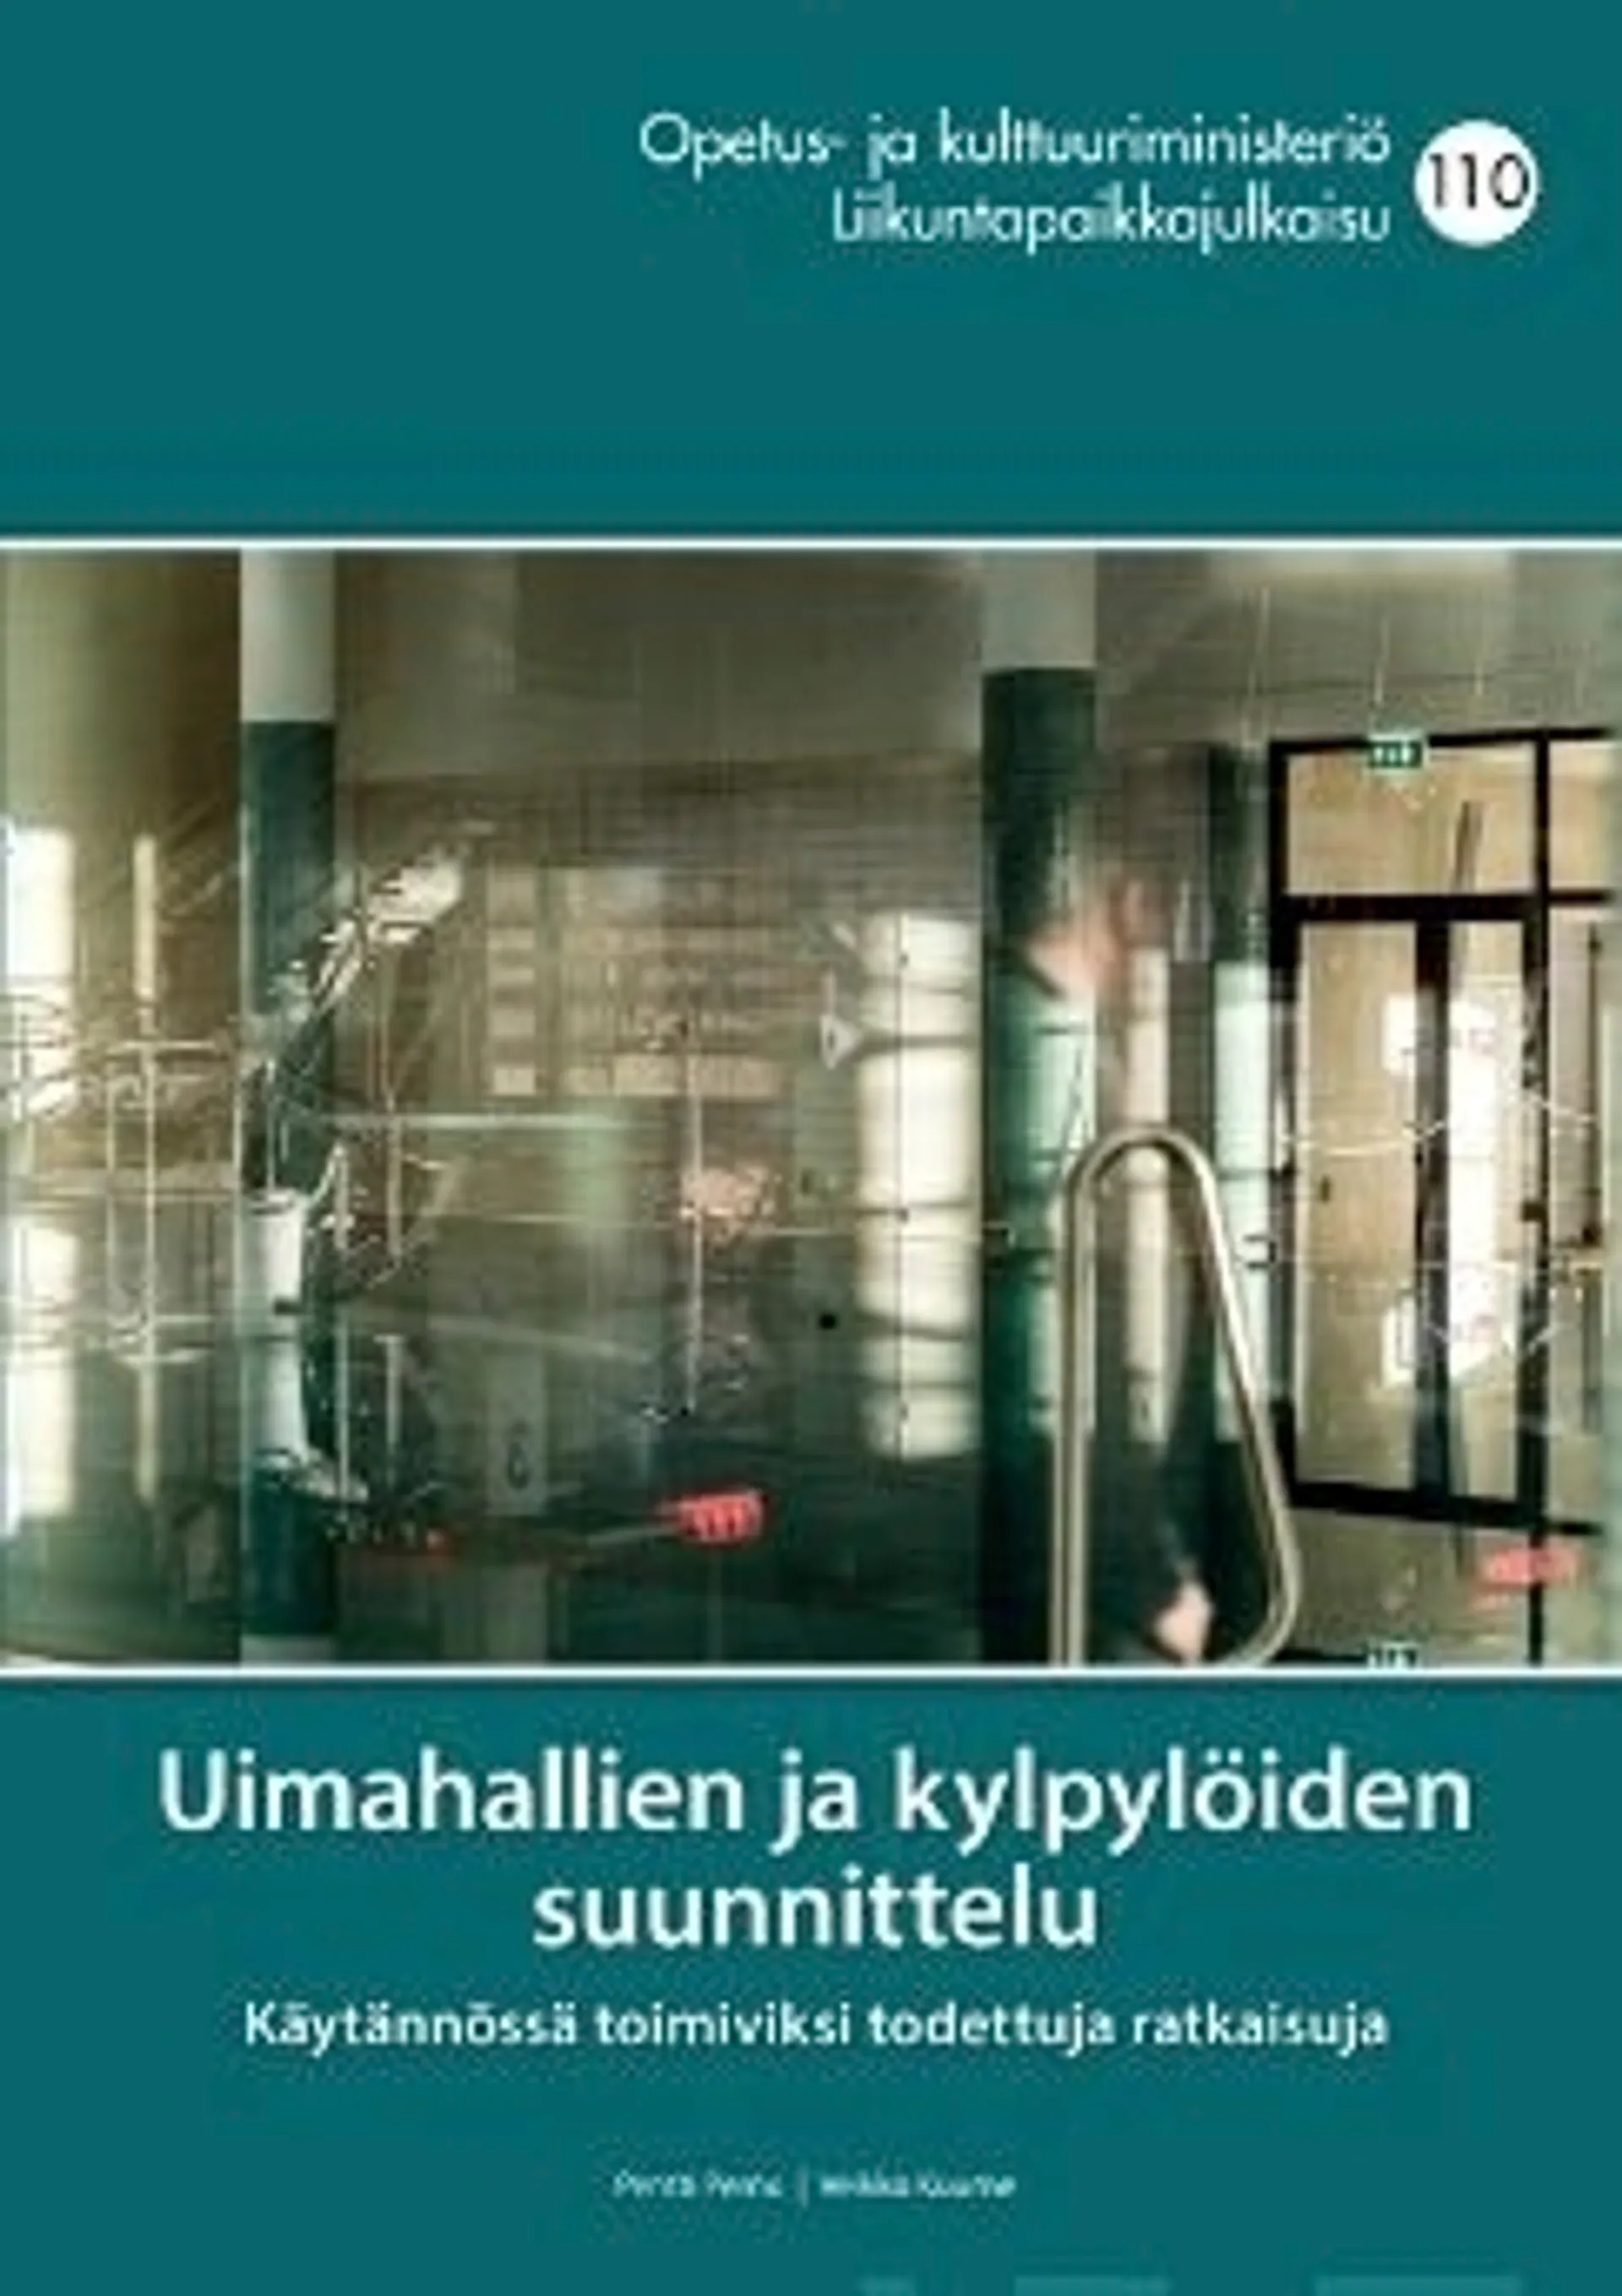 Pernu, Uimahallien ja kylpylöiden suunnittelu - Käytännössä toimiviksi todettuja ratkaisuja : Nro 110